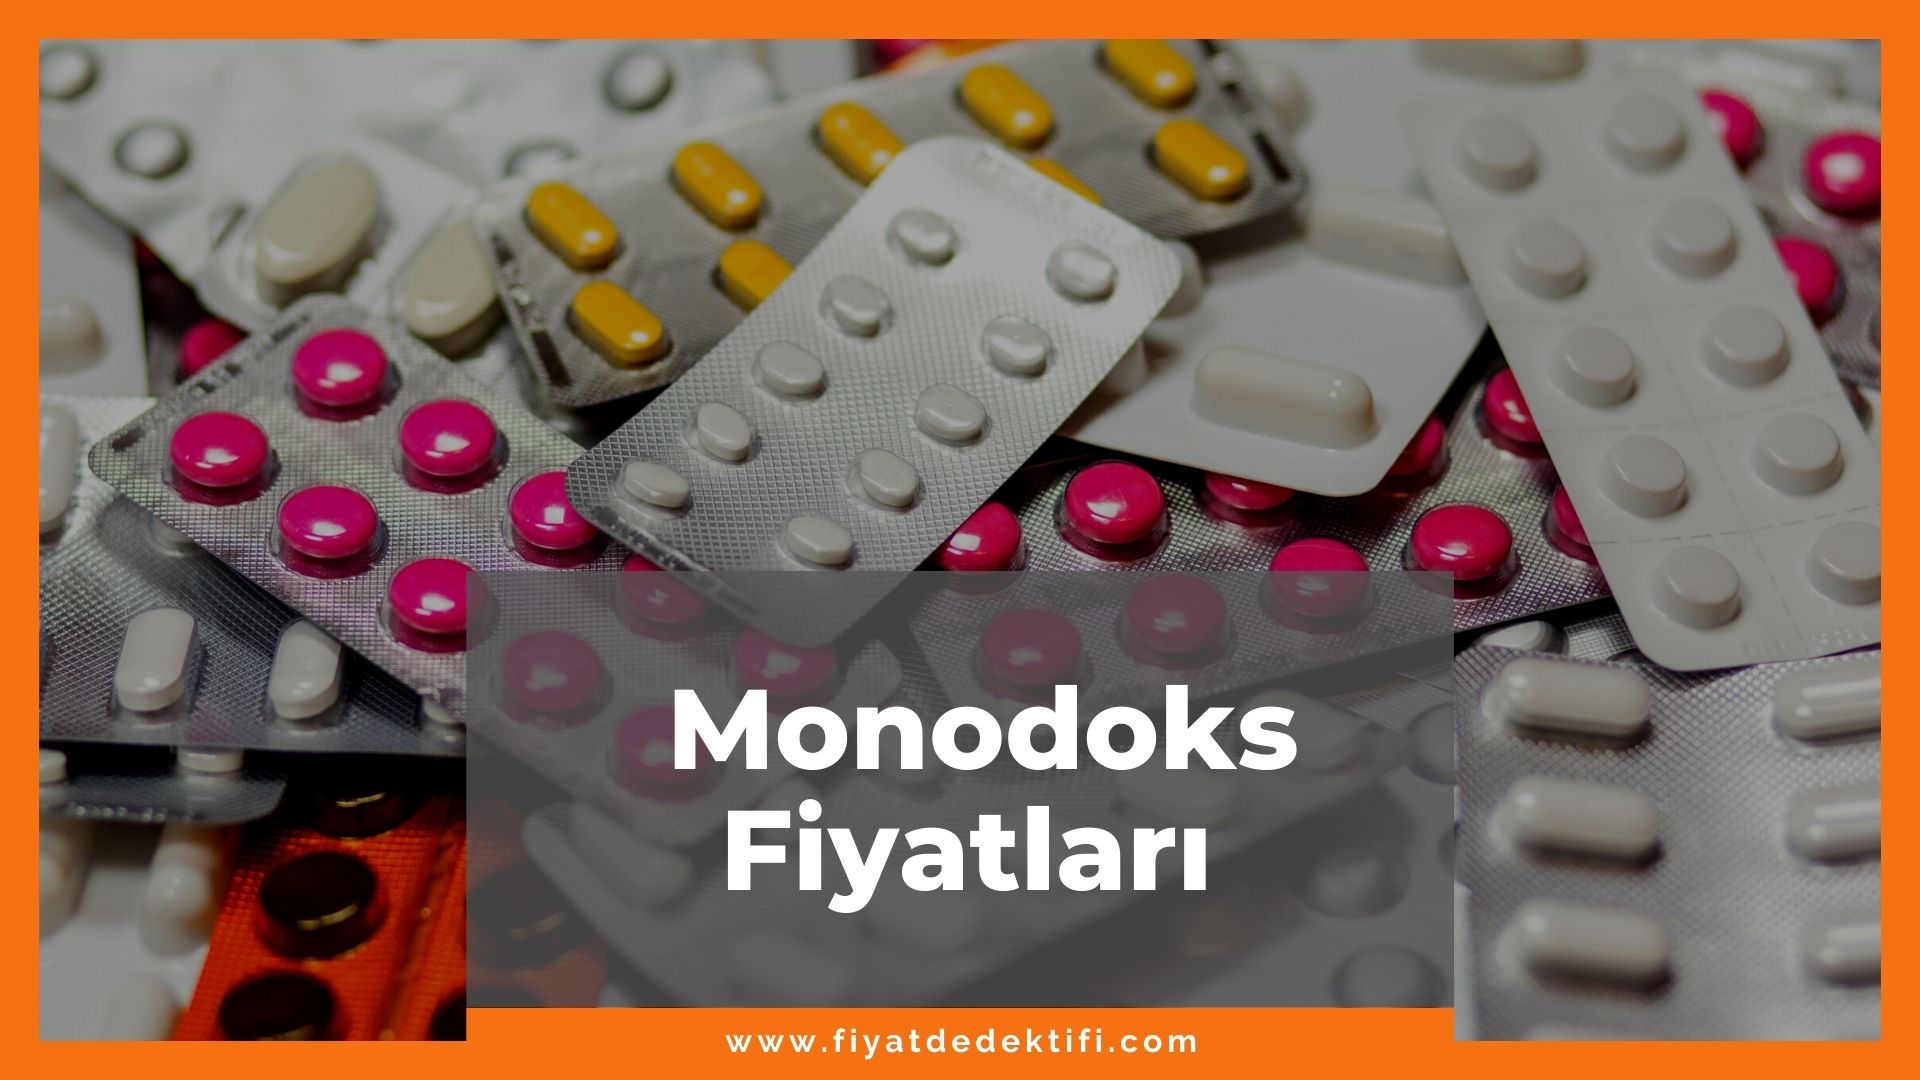 Monodoks Fiyat 2021, Monodoks Kapsül Fiyatı, Monodoks 100 mg Fiyatı, monodoks zamlandı mı, monodoks zamlı fiyatı ne kadar kaç tl oldu